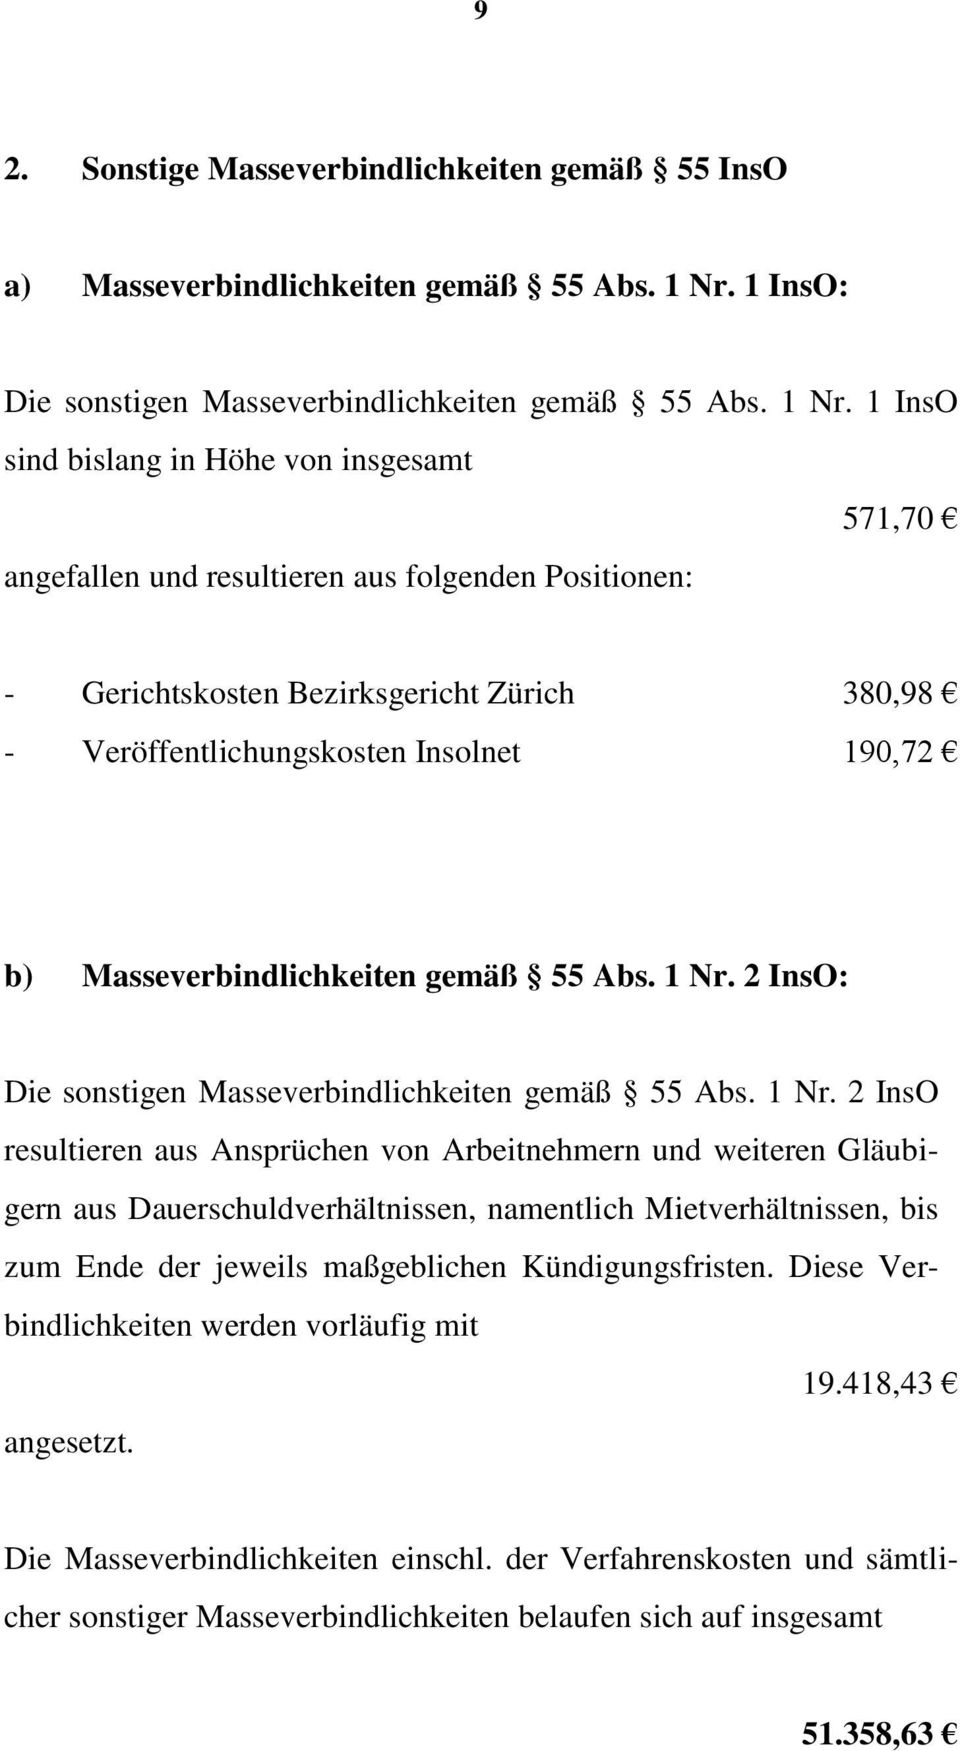 1 InsO sind bislang in Höhe von insgesamt 571,70 angefallen und resultieren aus folgenden Positionen: - Gerichtskosten Bezirksgericht Zürich 380,98 - Veröffentlichungskosten Insolnet 190,72 b)